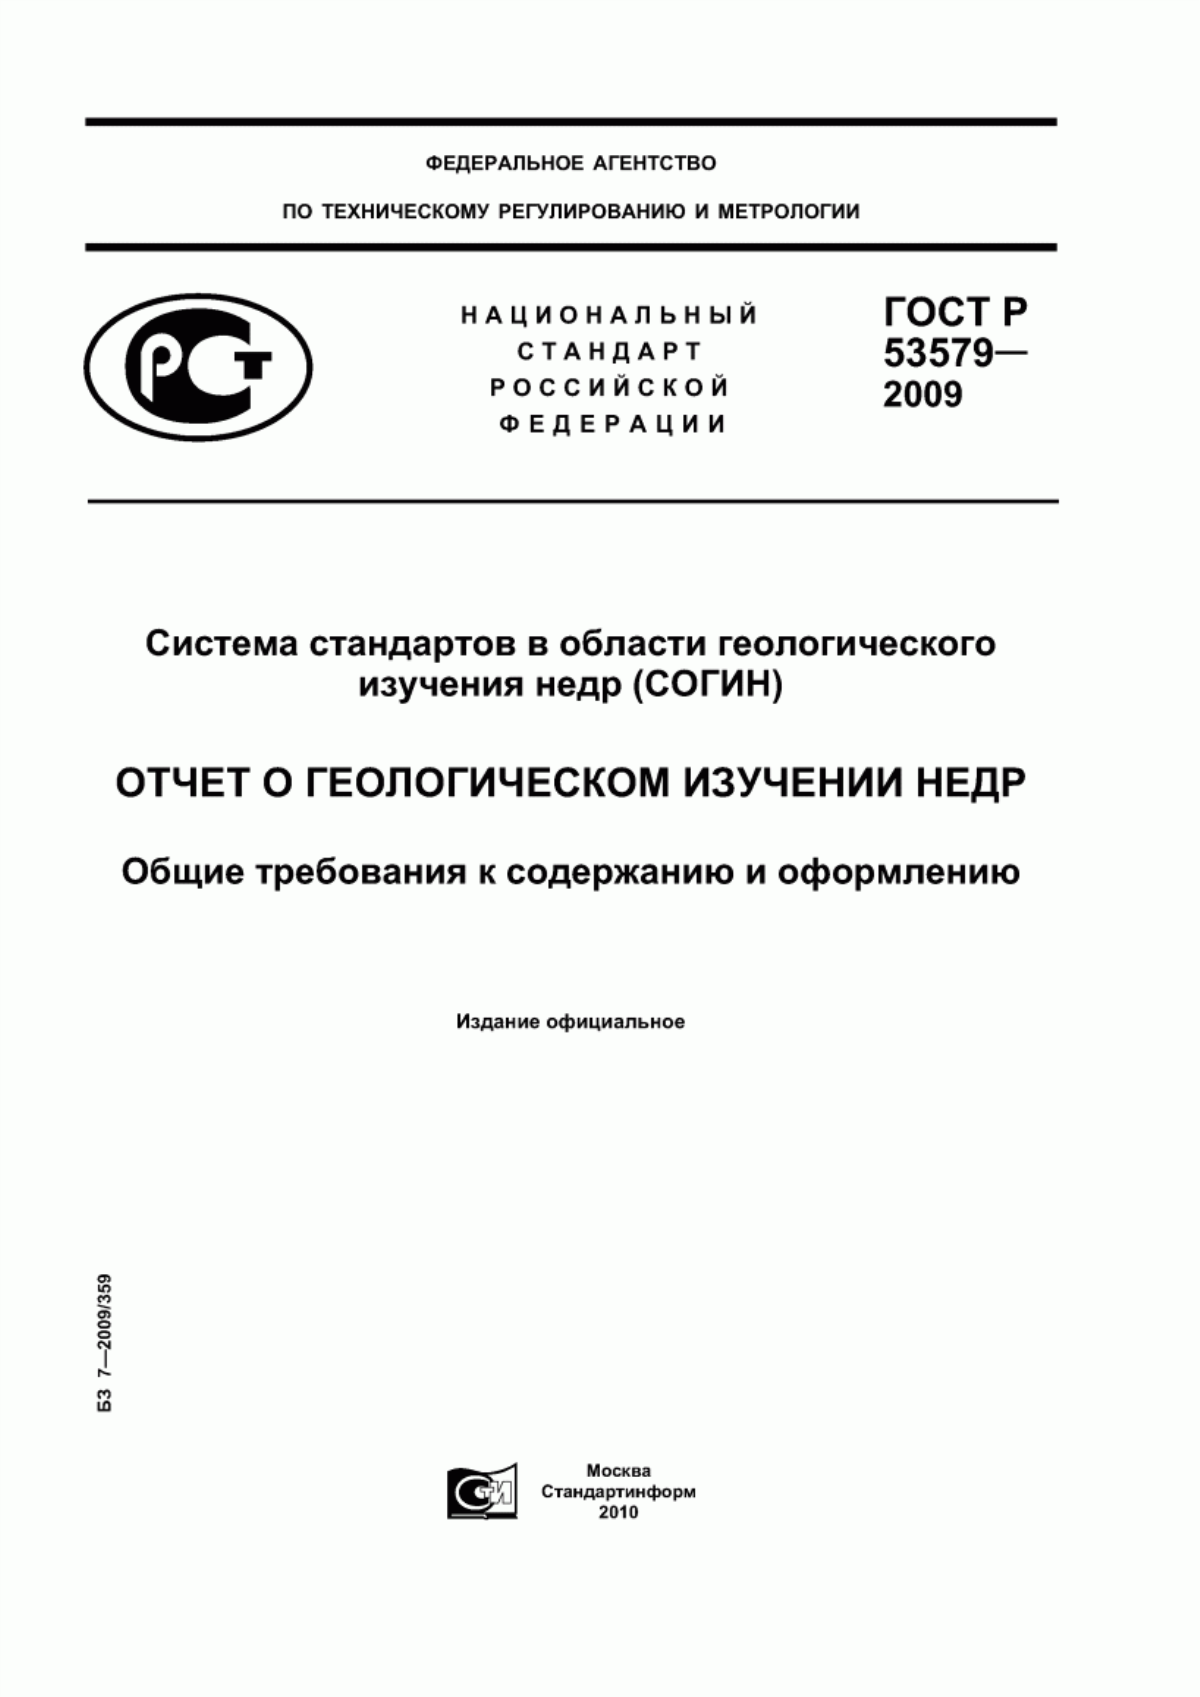 ГОСТ Р 53579-2009 Система стандартов в области геологического изучения недр (СОГИН). Отчет о геологическом изучении недр. Общие требования к содержанию и оформлению